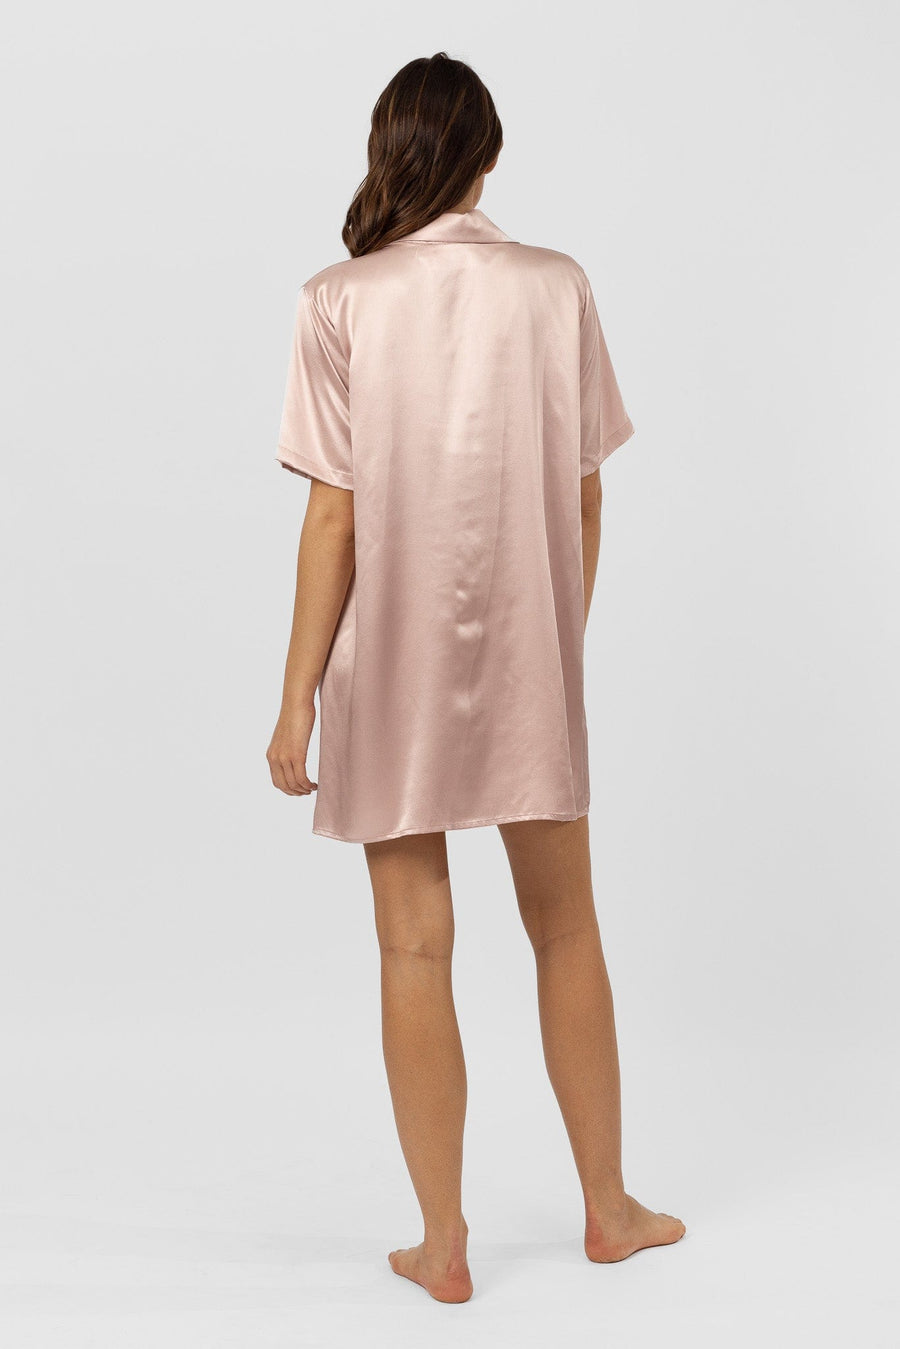 DRESS Lumiere Short Sleeve Shirt Dress